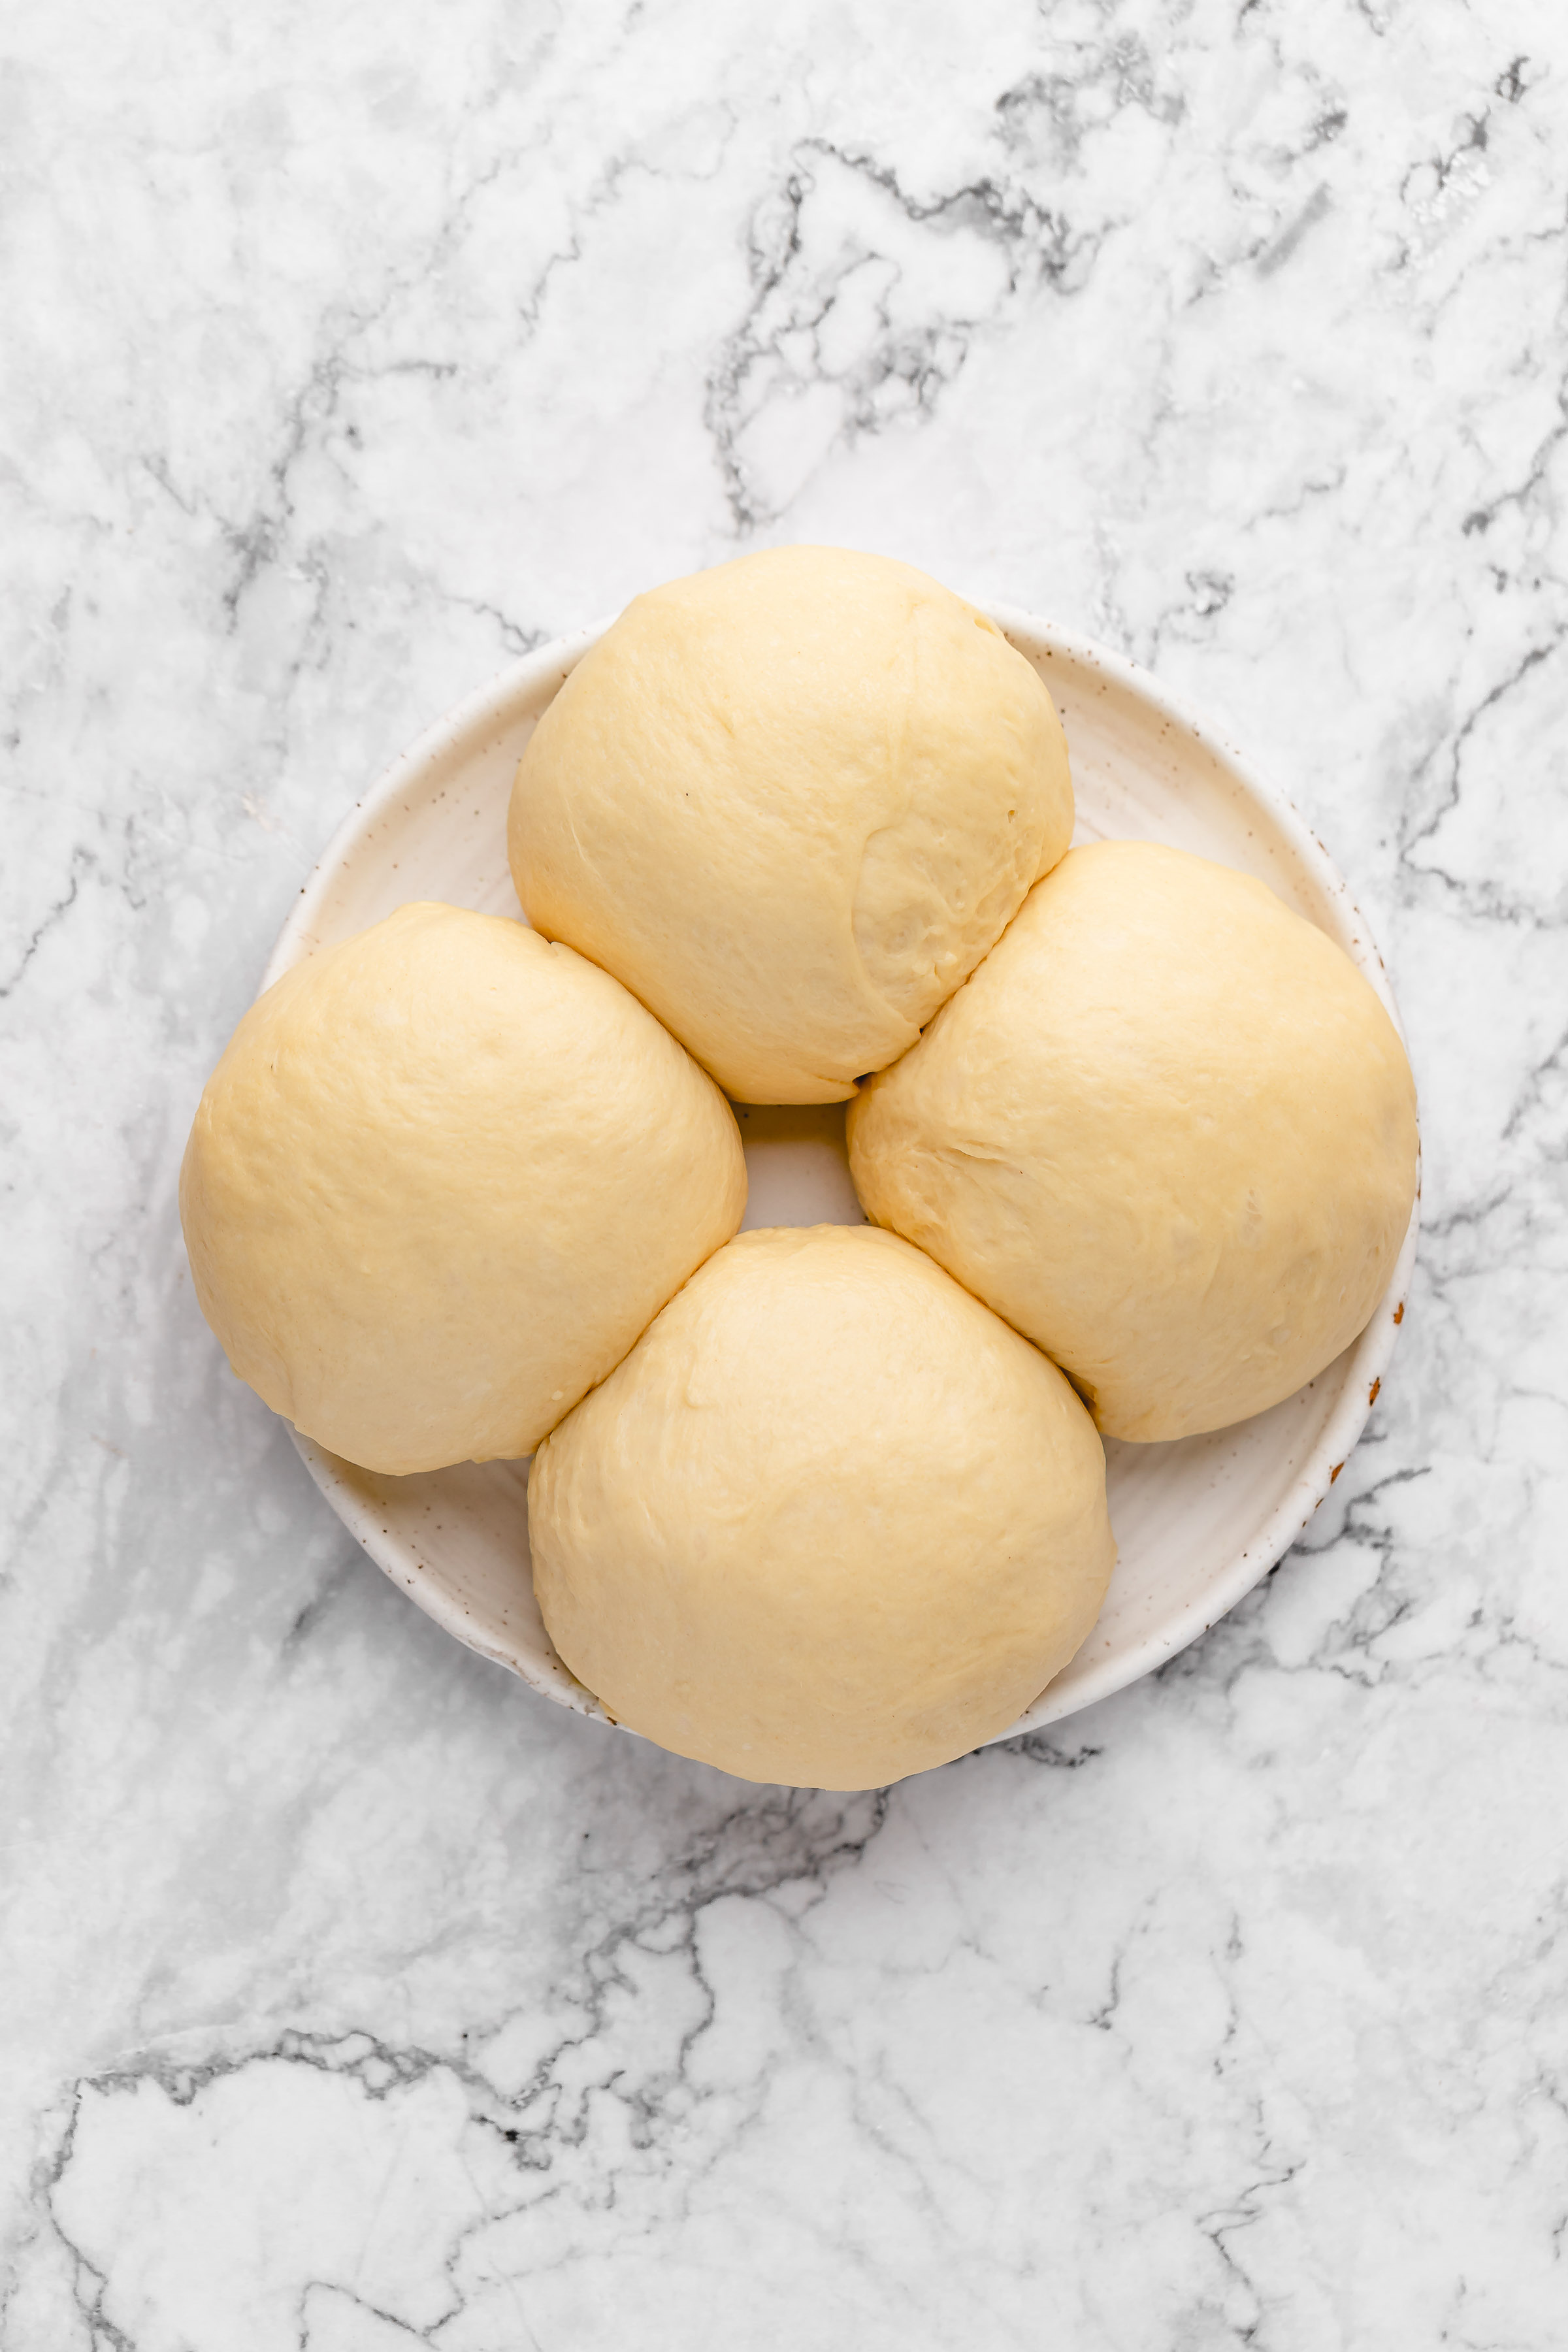 Four balls of bread dough